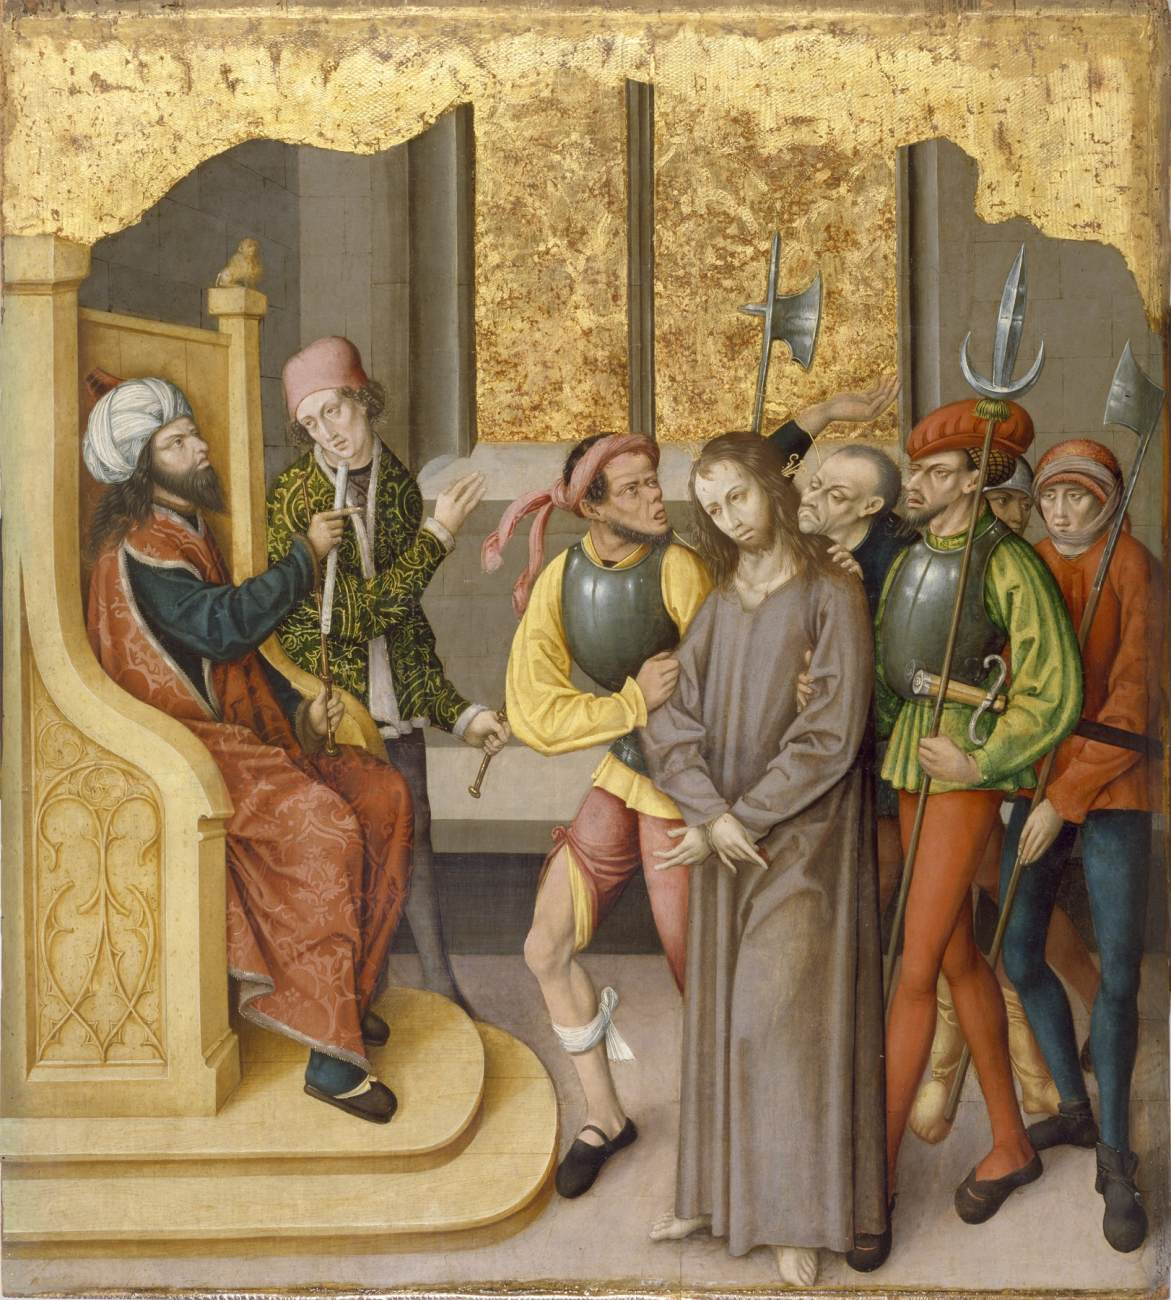 Altarbild mit der Leidenschaft Christi: Christus vor dem Hohepriester